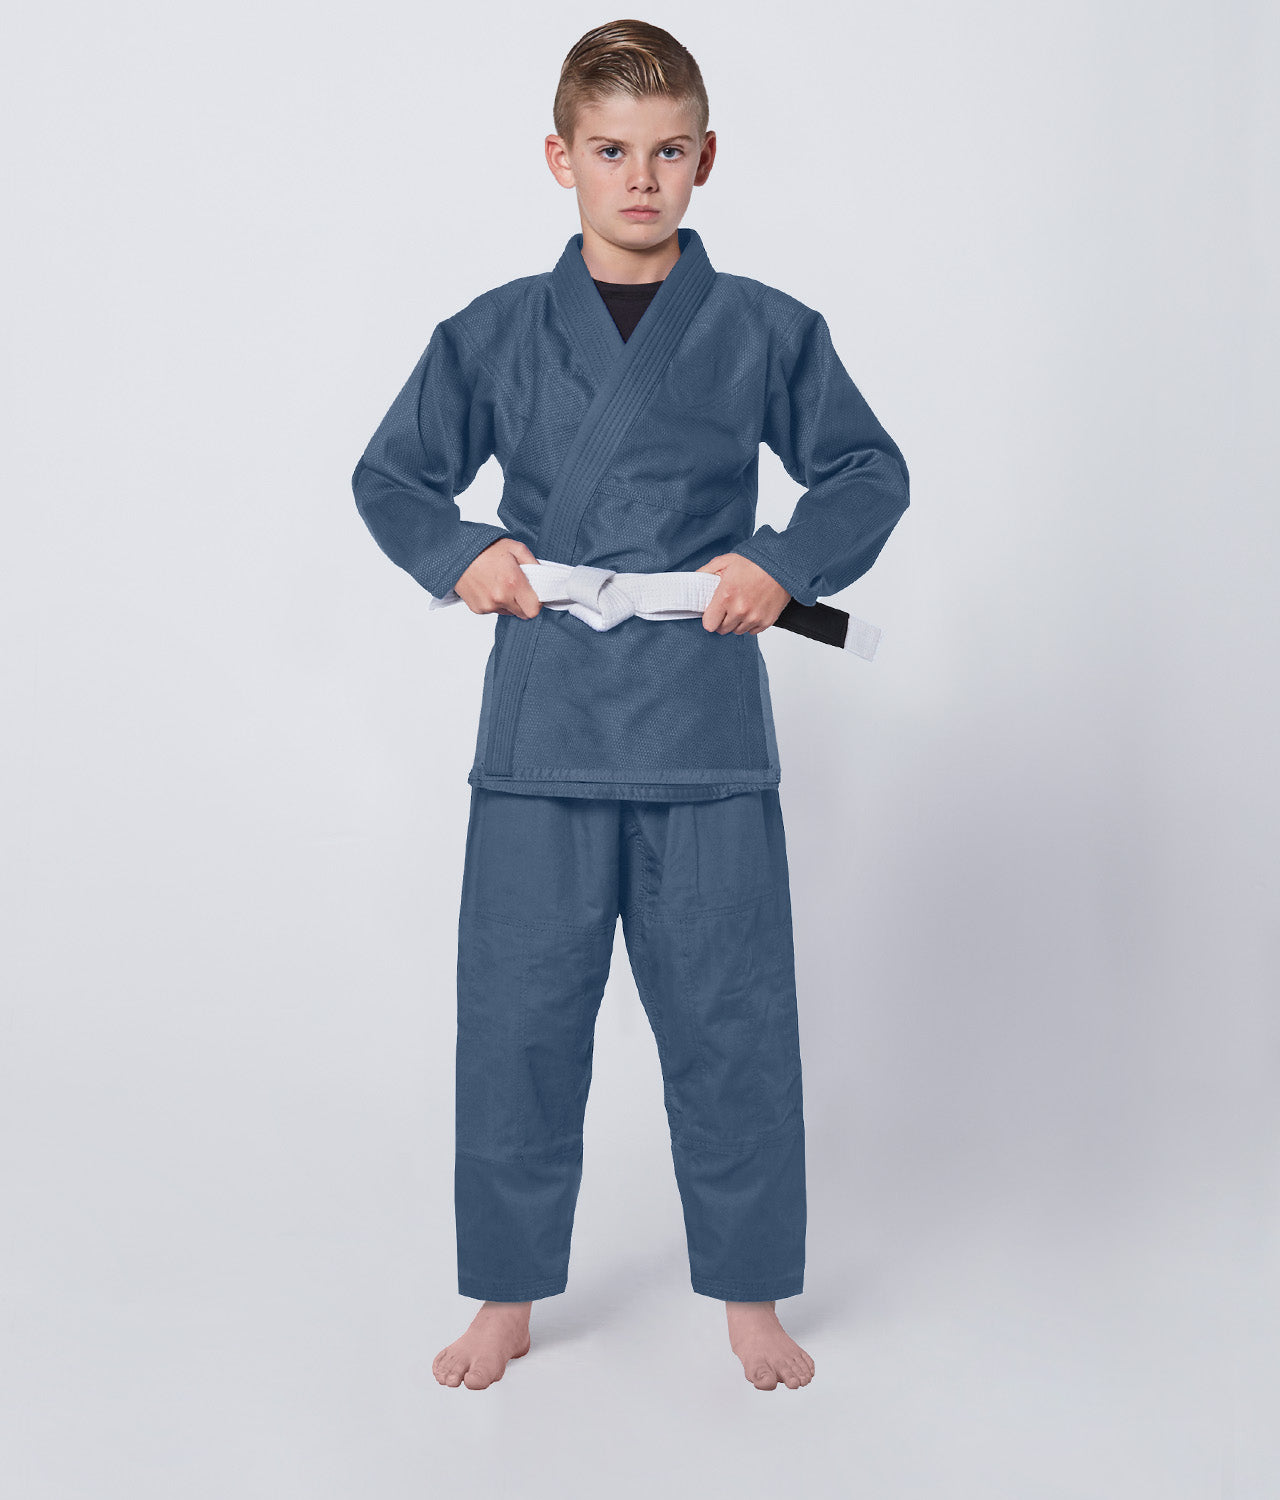 Elite Sports Kids' Essential Gray Brazilian Jiu Jitsu BJJ Gi with Pants